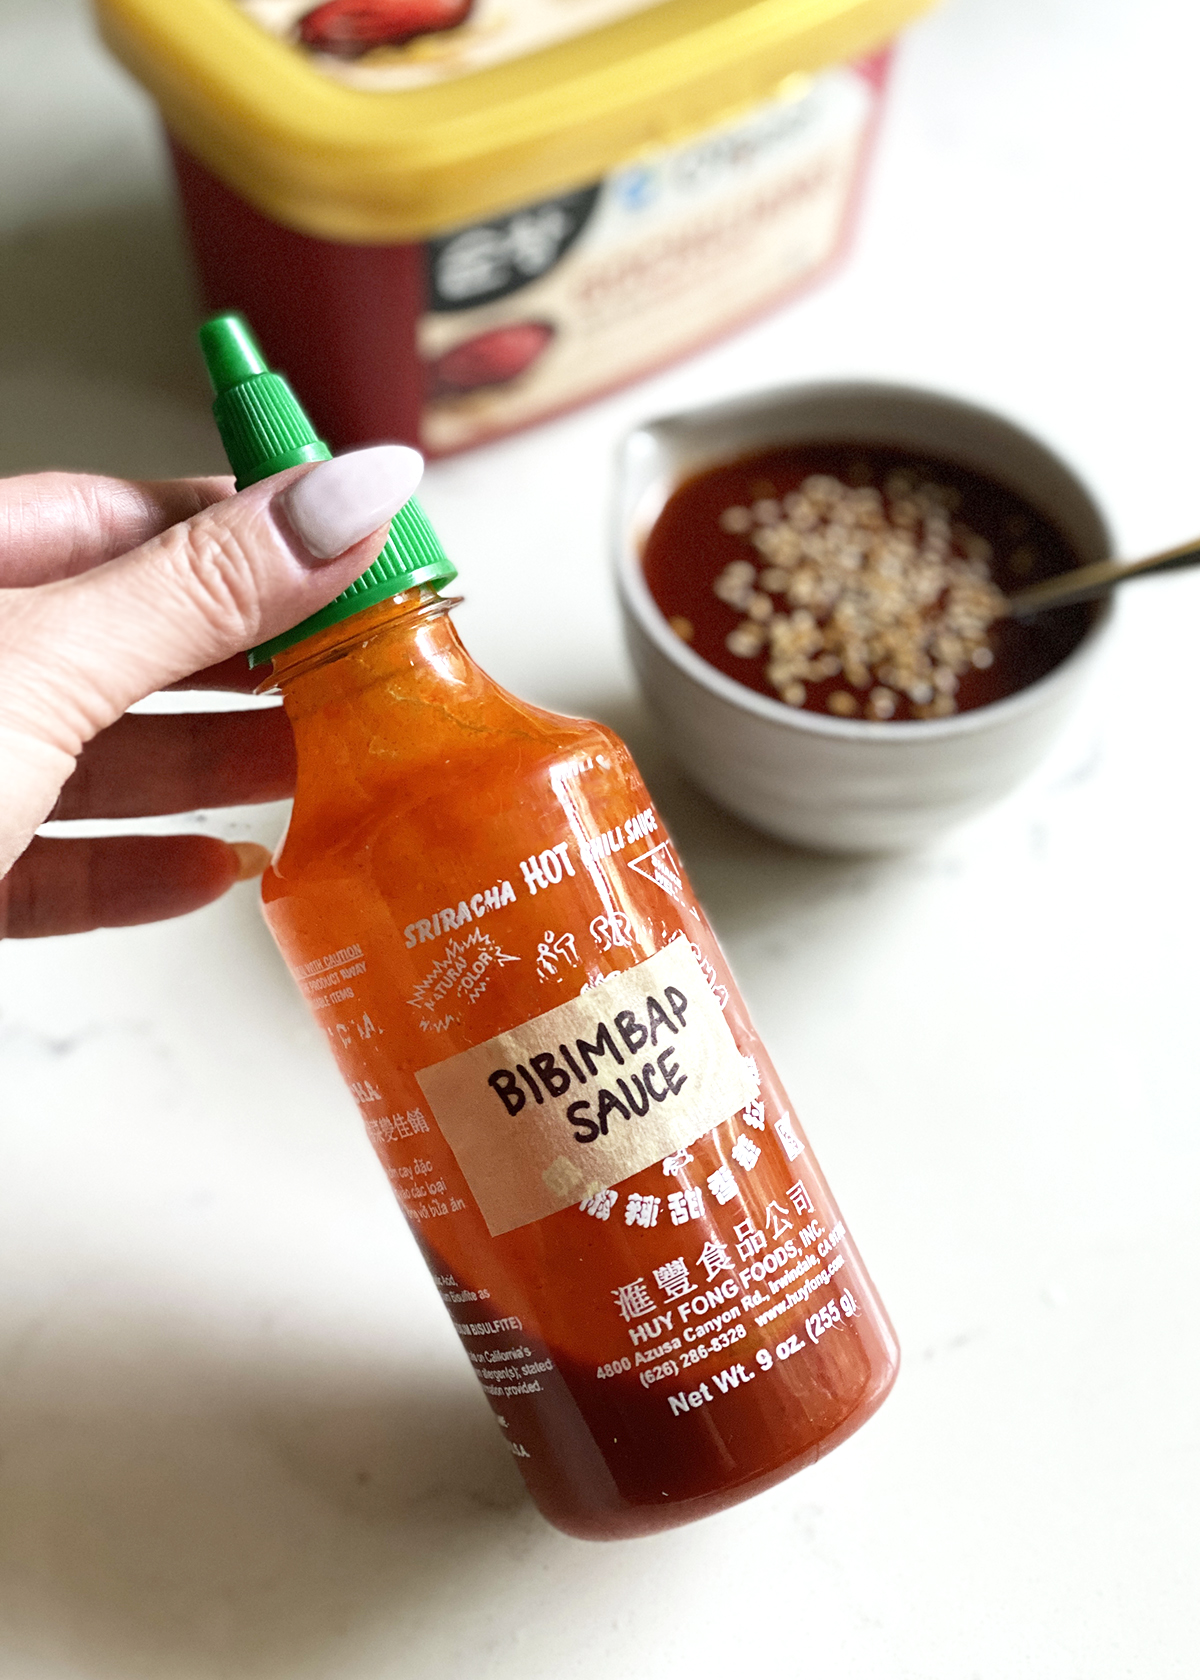 bibimbap sauce in sriracha bottle